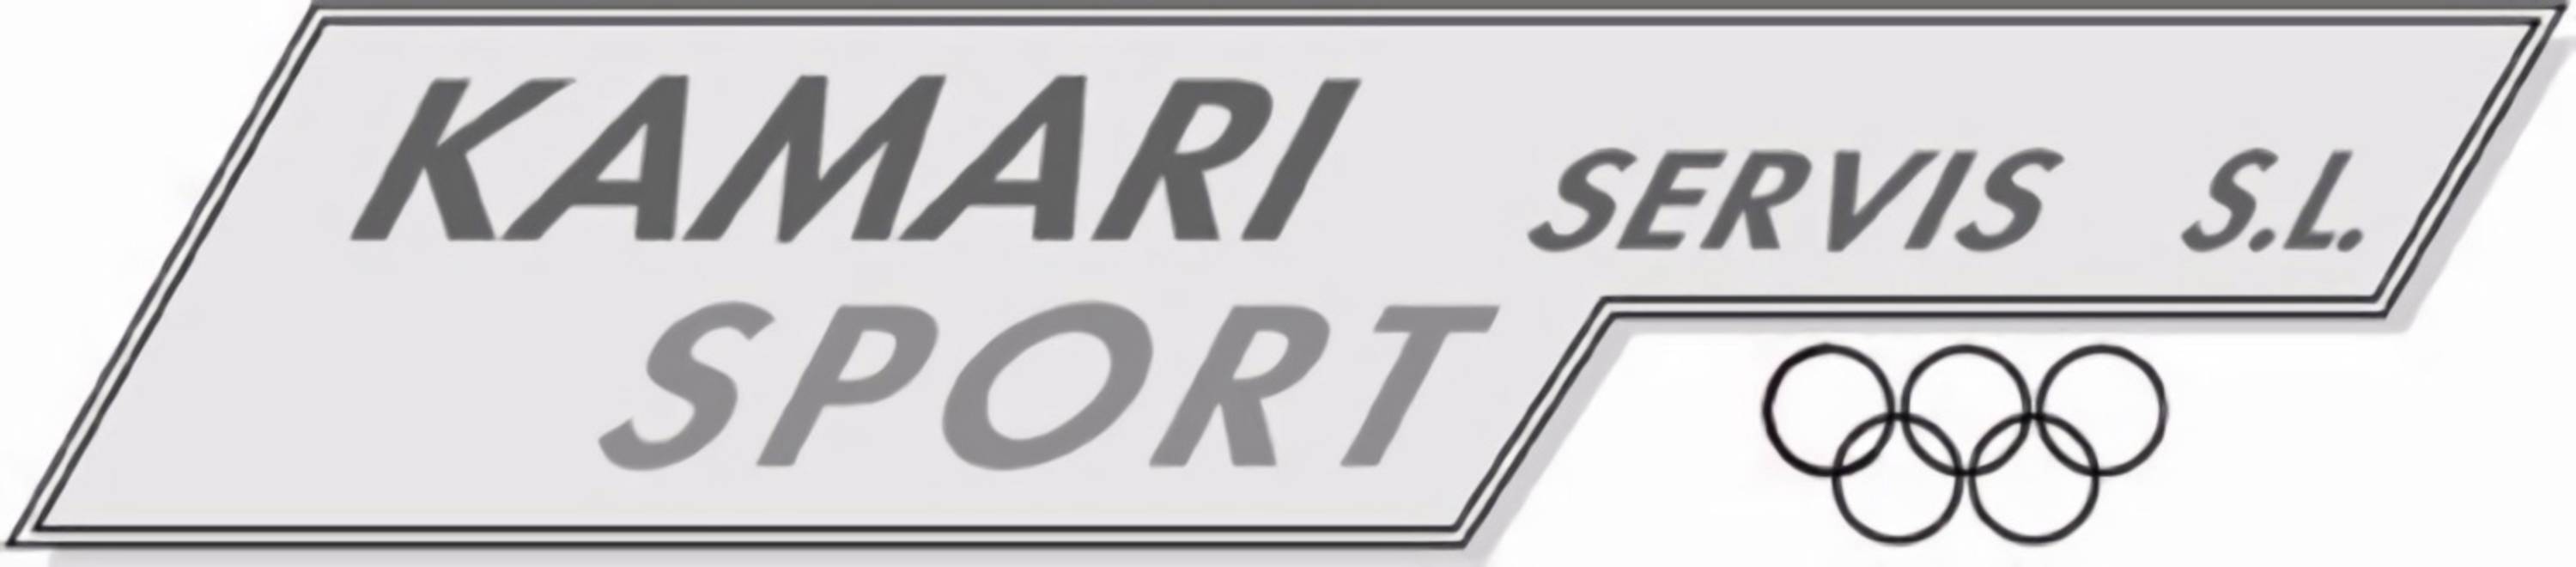 Ver detalles de la Empresa Kamari Sport